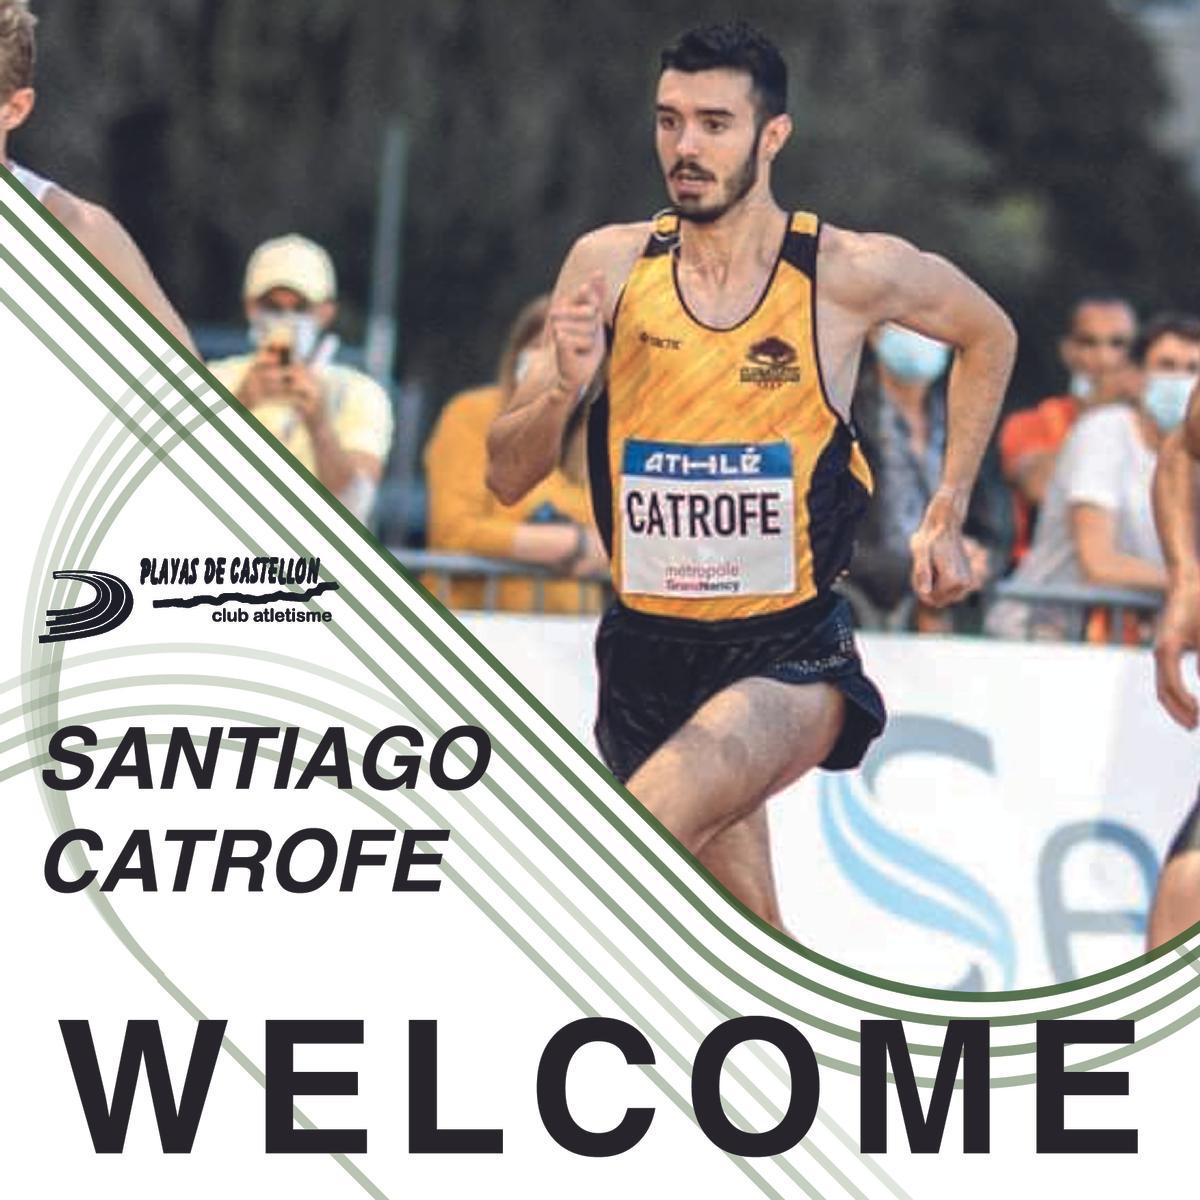 Santiago Catrofe posee una buena marca marca de 3:35.82 en 1.500 metros y que se ha mostrado muy competitivo en la temporada de cross.